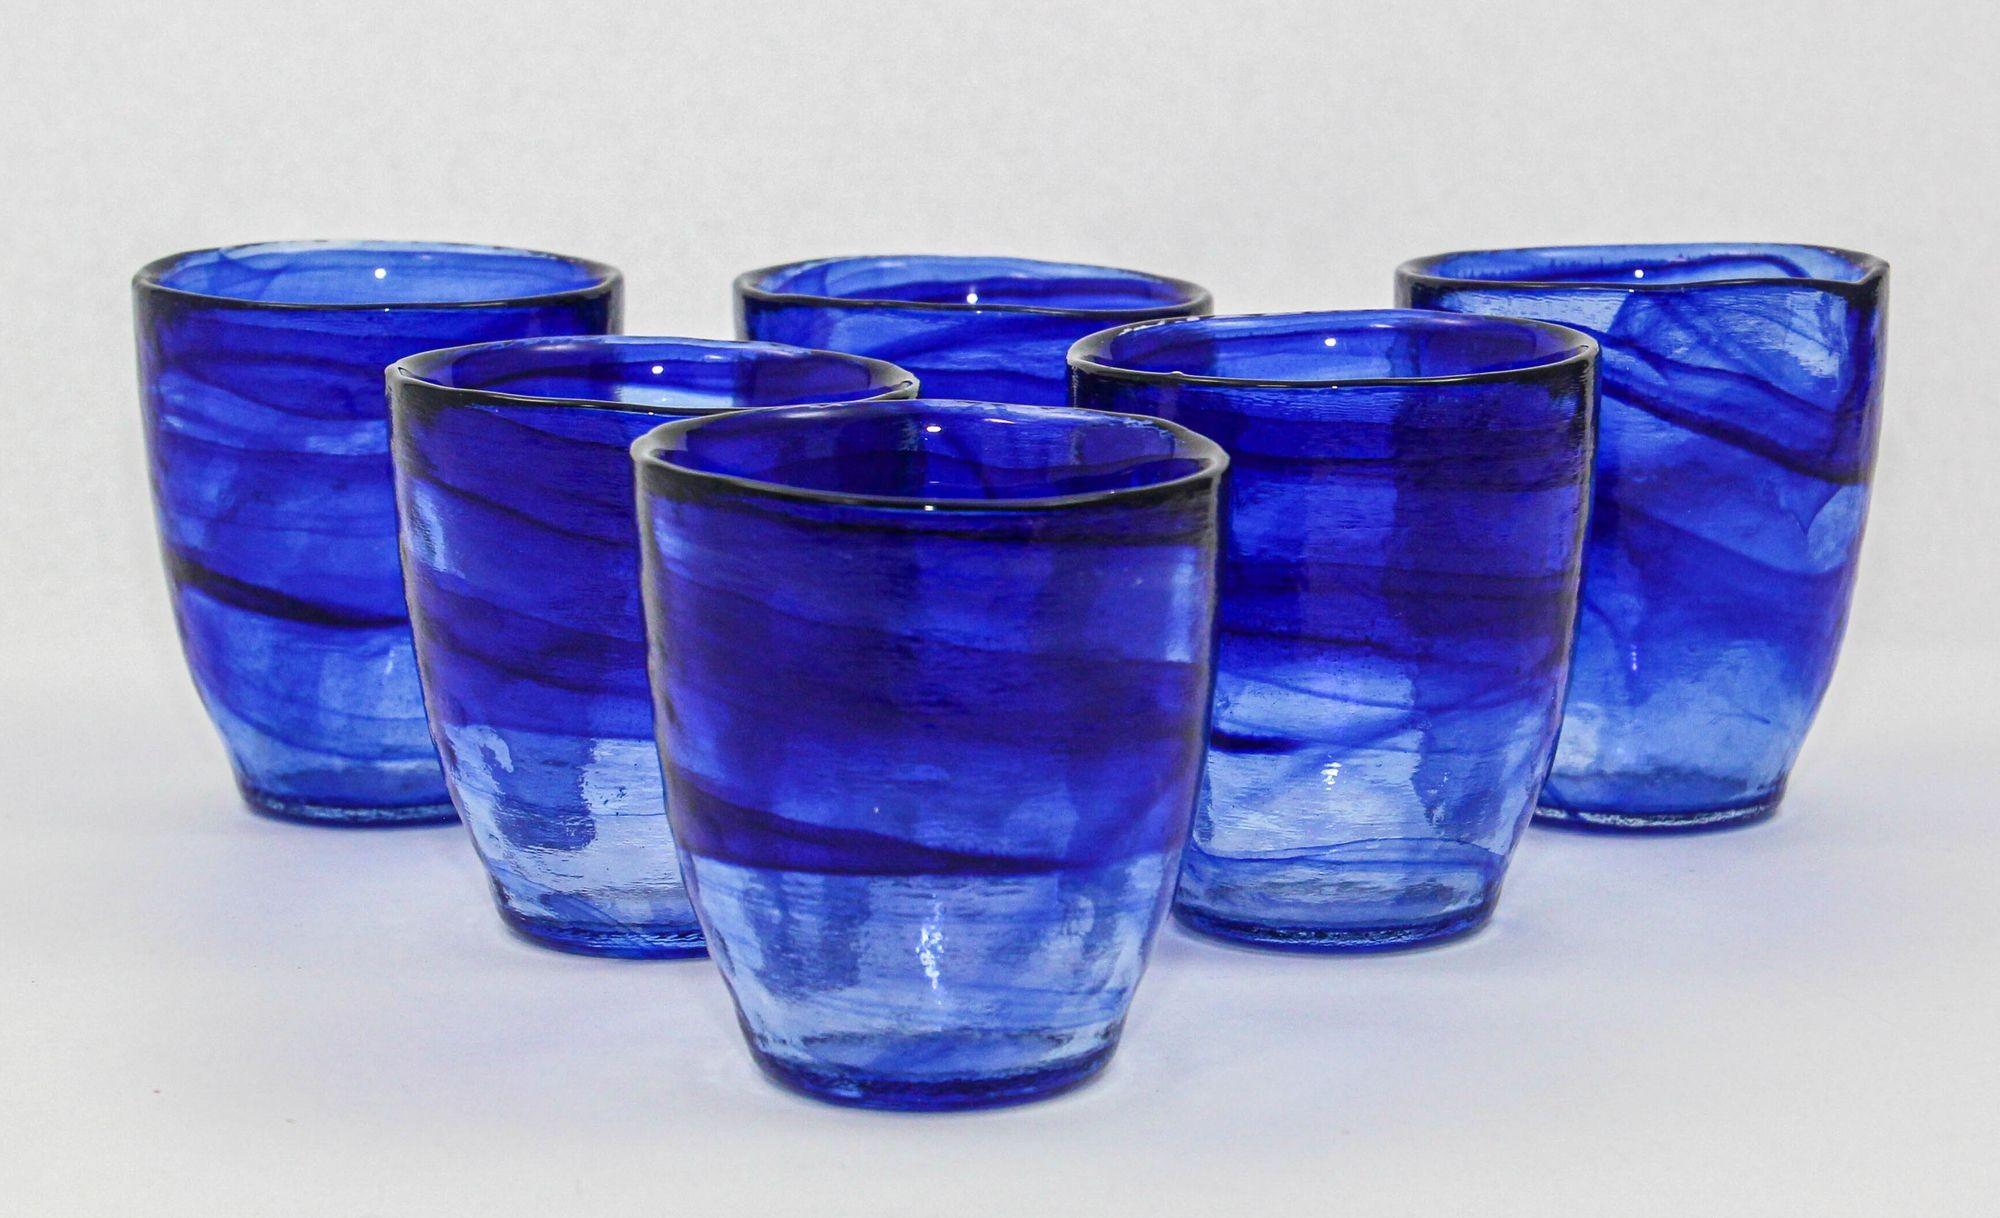 Handgefertigte Old-Fashioned-Gläser in Kobaltblau mit Wirbel - 6er-Set.
Diese mundgeblasenen italienischen Vintage-Gläser haben eine dicke und schwere Konstruktion aus fesselndem kobaltblauem und klarem Glas mit komplizierten Wirbeln.
Dieses